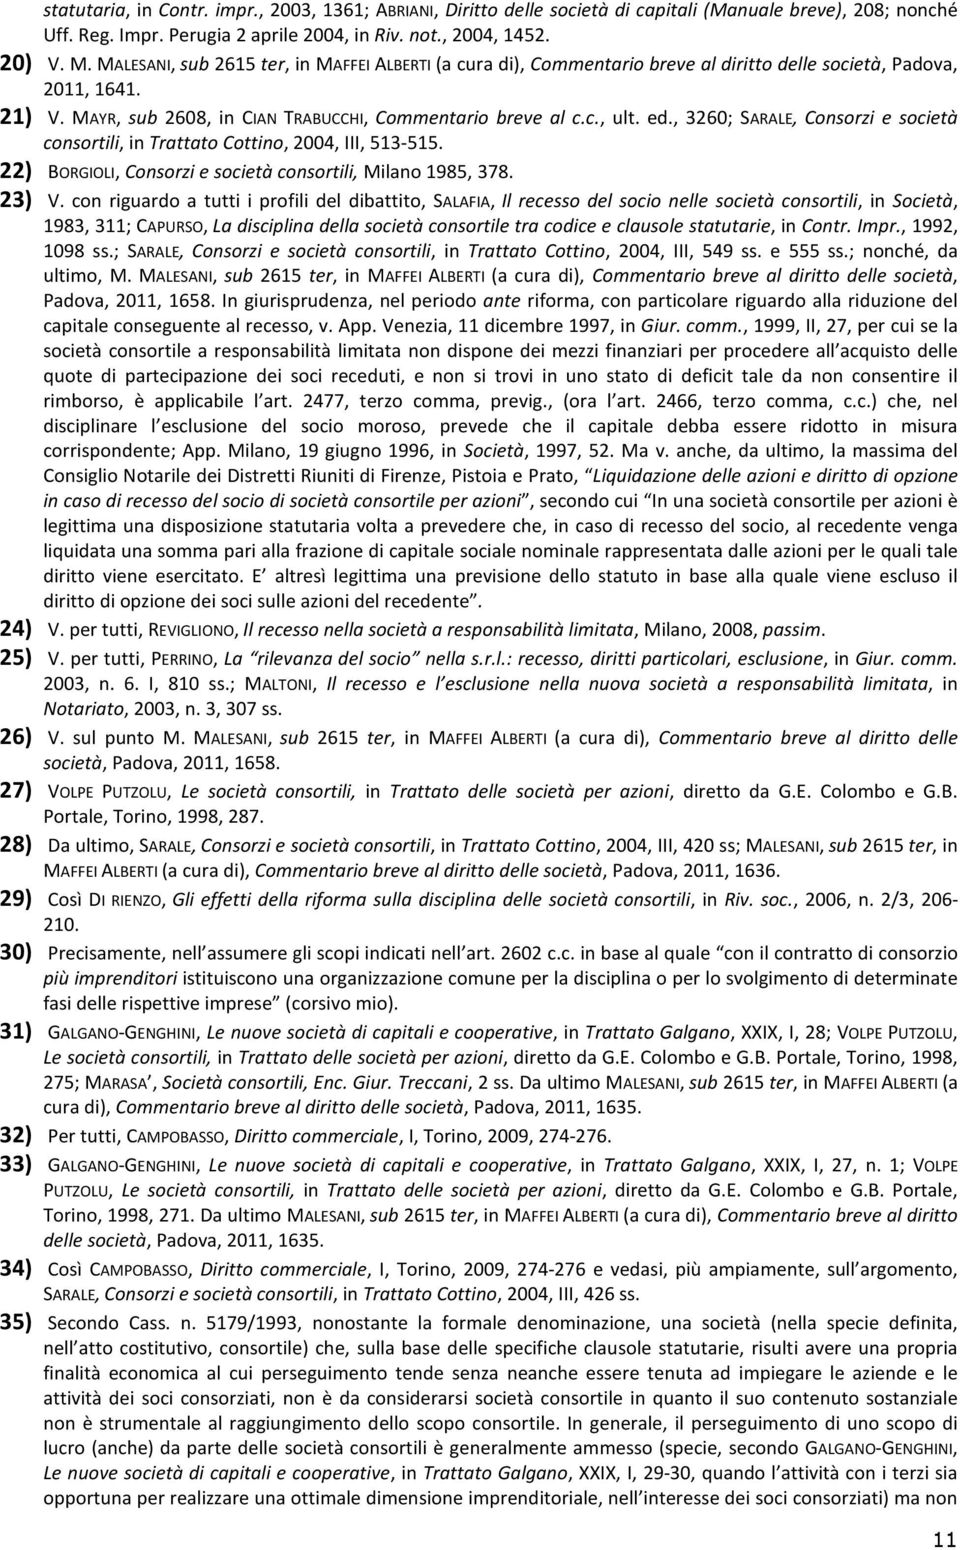 , 3260; SARALE, Consorzi e società consortili, in Trattato Cottino, 2004, III, 513-515. 22) BORGIOLI, Consorzi e società consortili, Milano 1985, 378. 23) V.